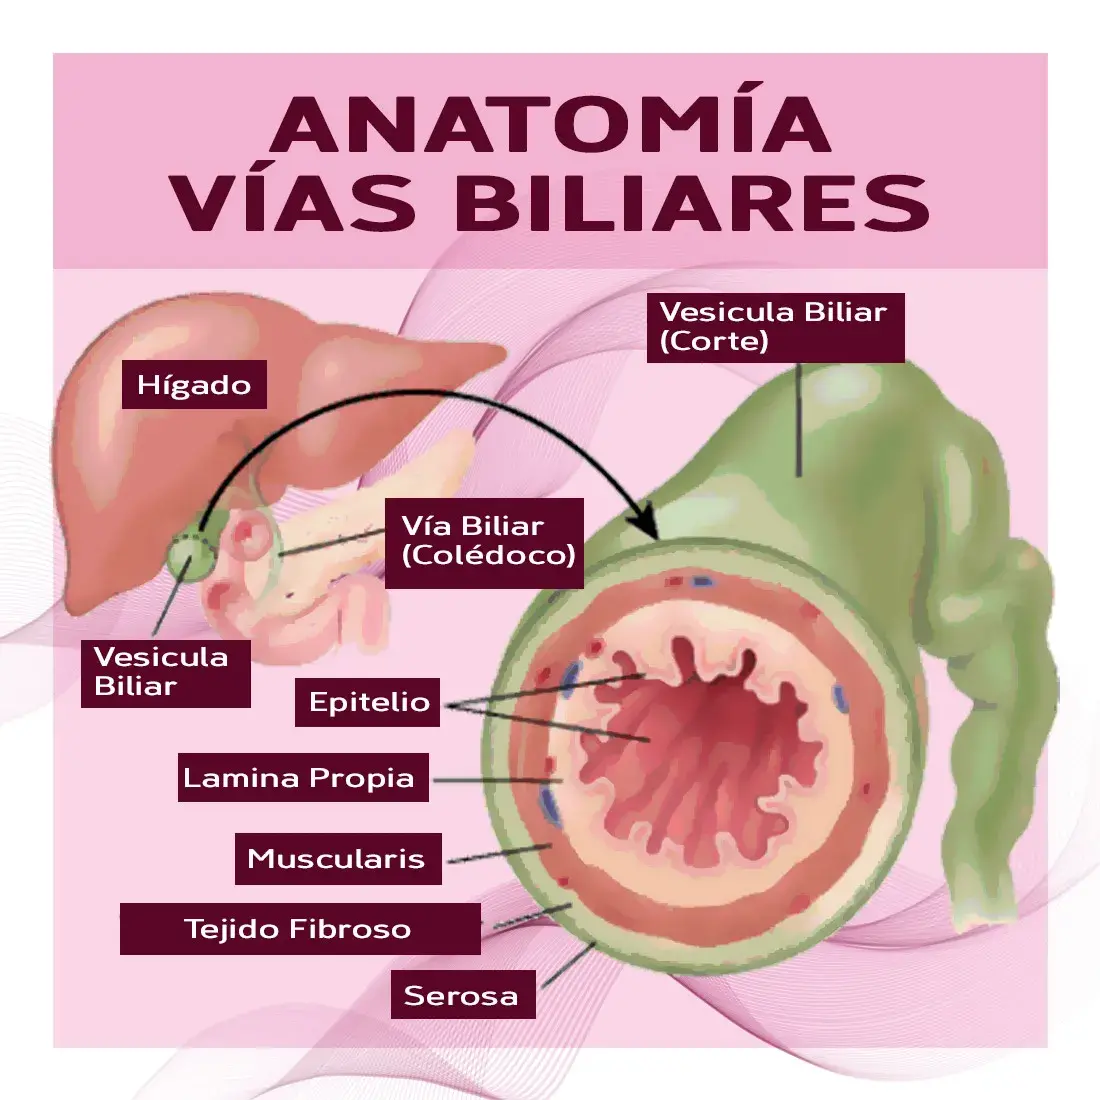 Anatomía de las vías biliares (vesícula biliar, vía biliar, epitelio, lamina propia, muscularis, tejido fibroso, serosa)